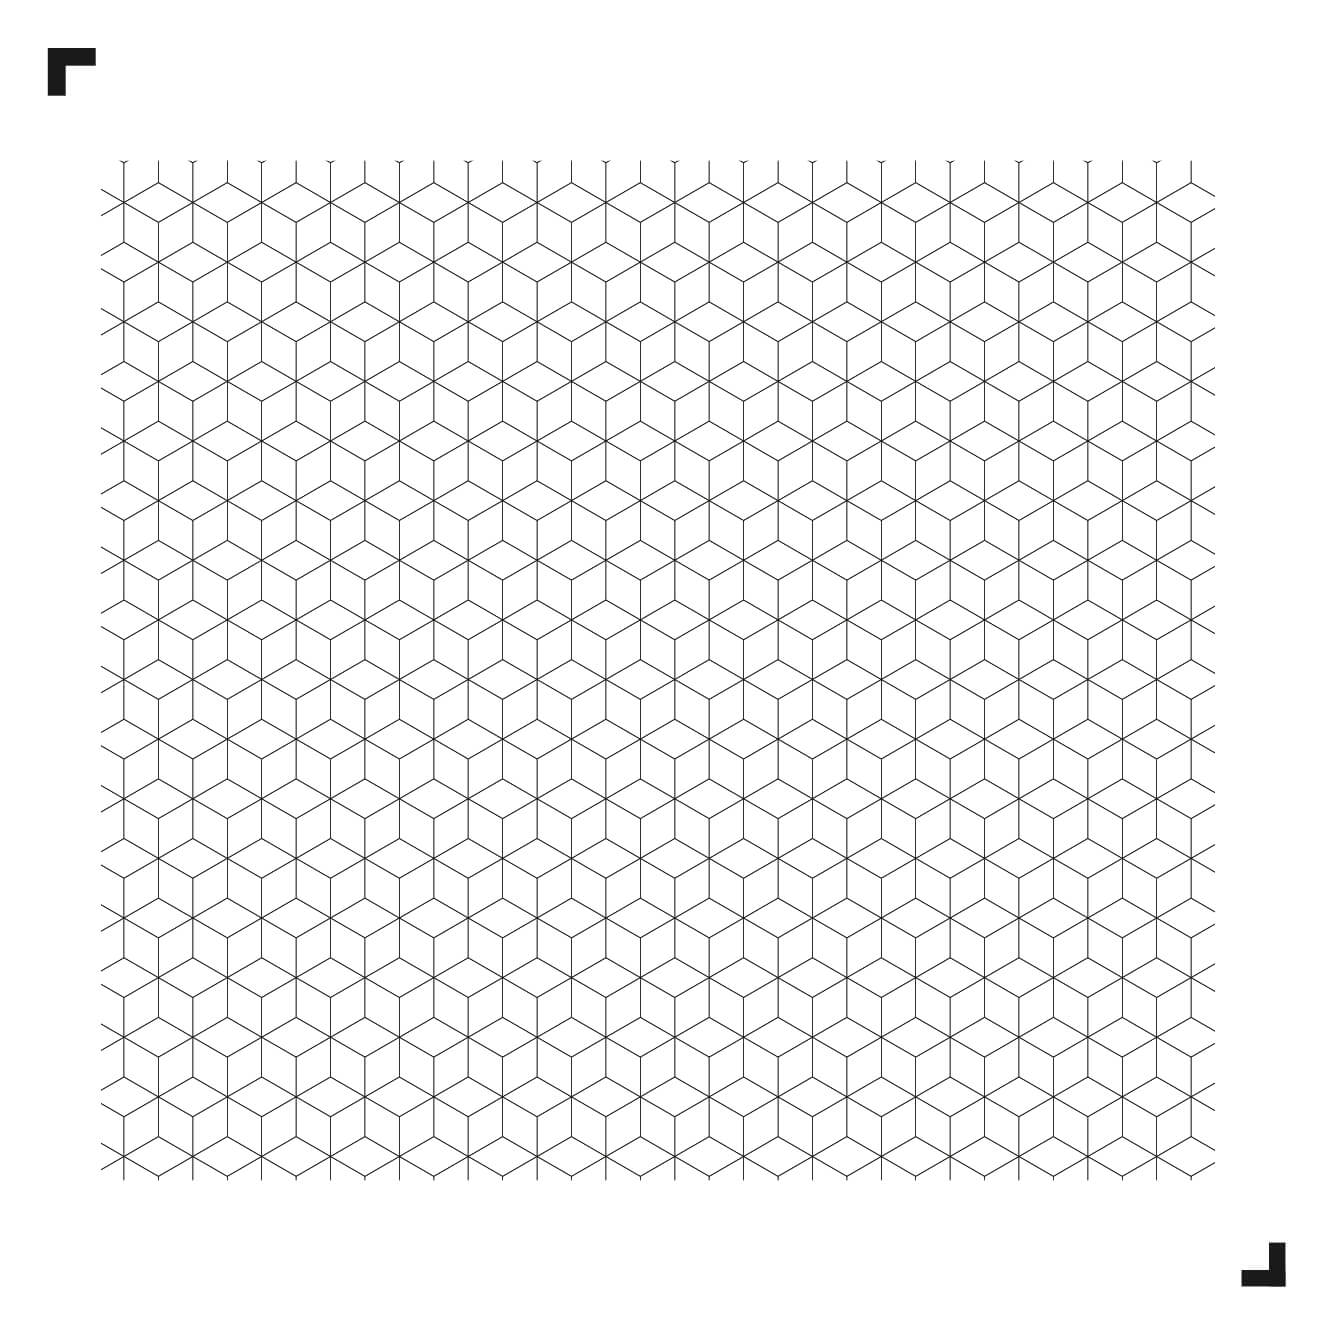 Schwarz-Weiß-Zeichnung des Diamond-Musters - Moduleo Moods - Luxury Vinyl Tiles - Creative flooring